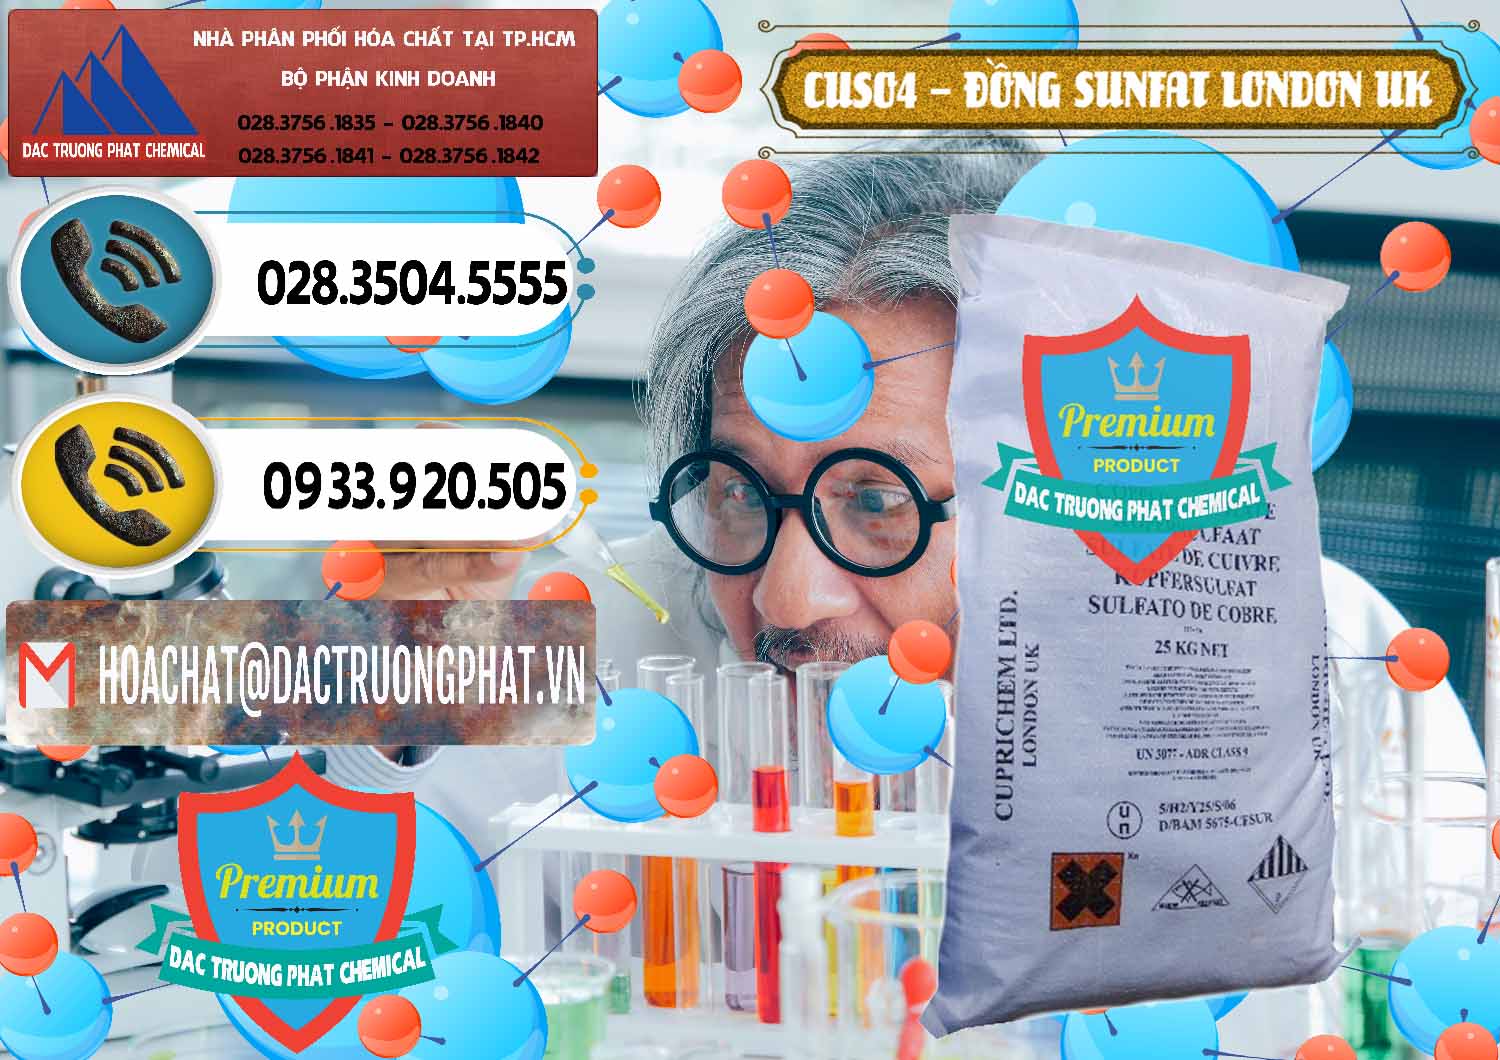 Cung ứng _ bán CuSO4 – Đồng Sunfat Anh Uk Kingdoms - 0478 - Nơi bán - cung cấp hóa chất tại TP.HCM - hoachatdetnhuom.vn